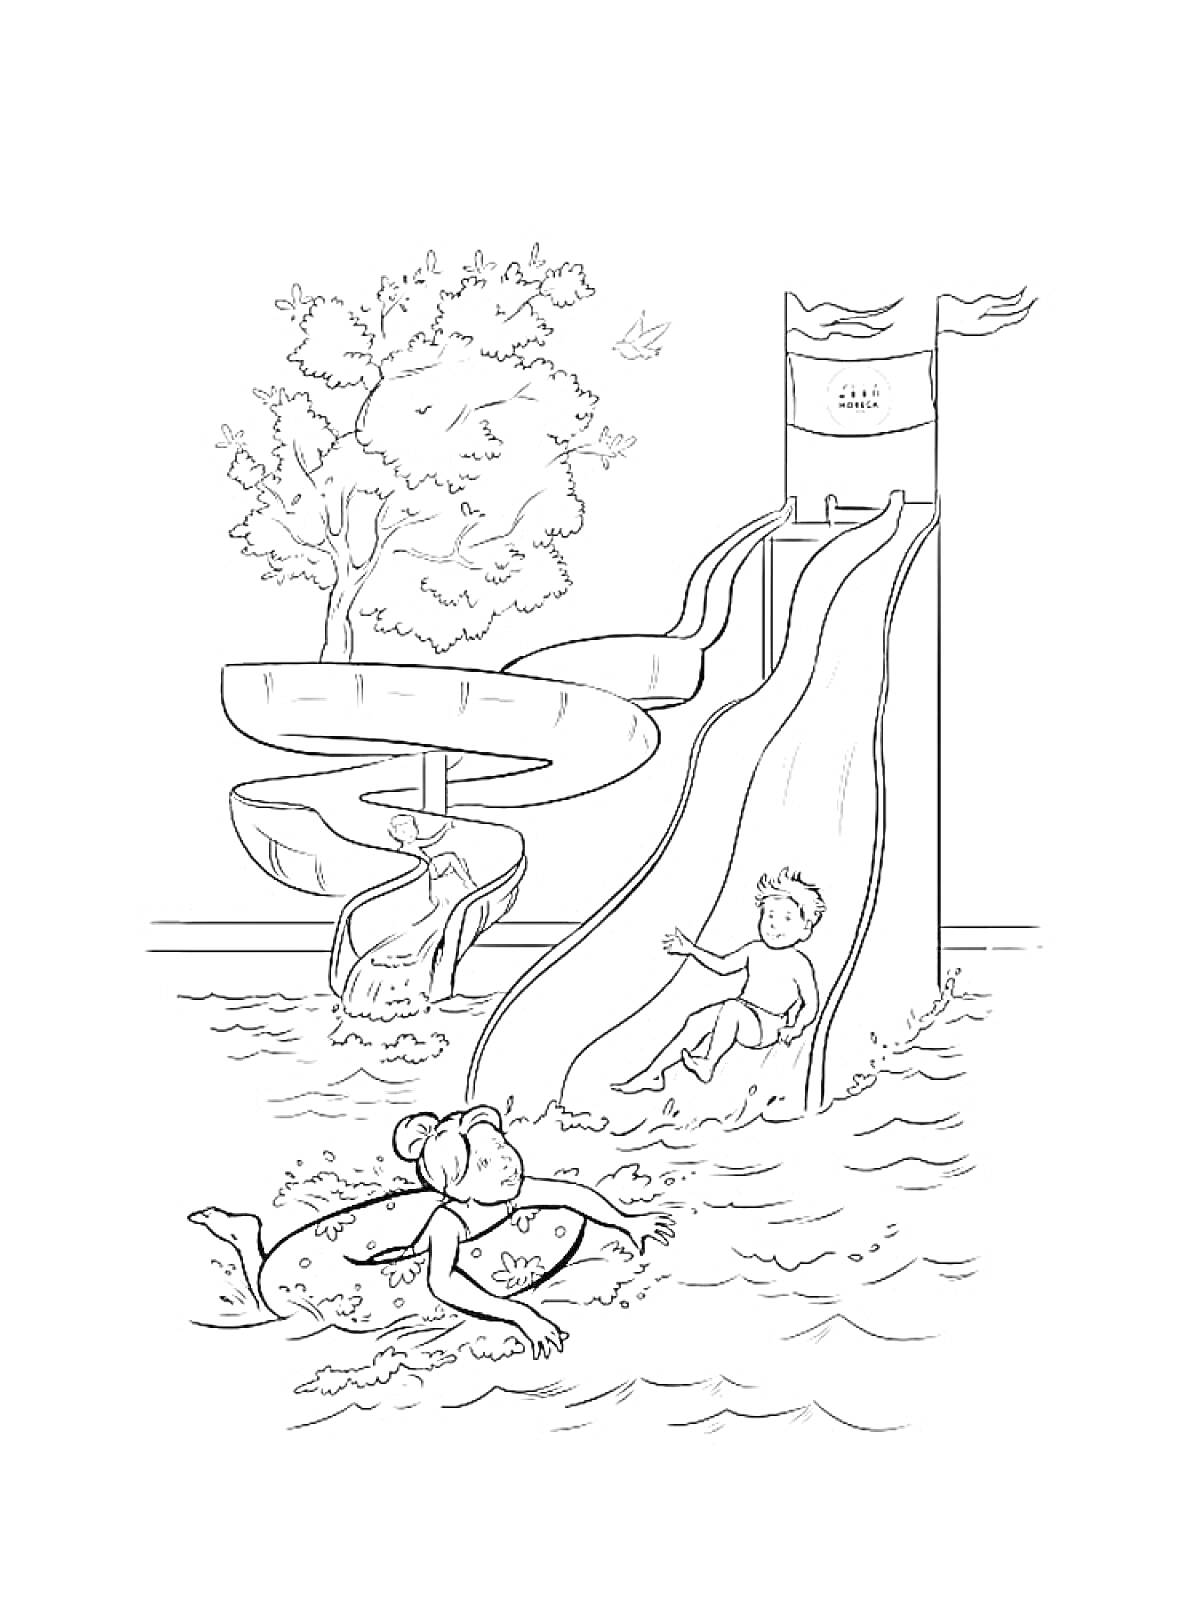 Раскраска Дети в аквапарке, девушка плавучая на воде, мальчик на водяной горке, извивающаяся горка, деревья и птица на заднем плане